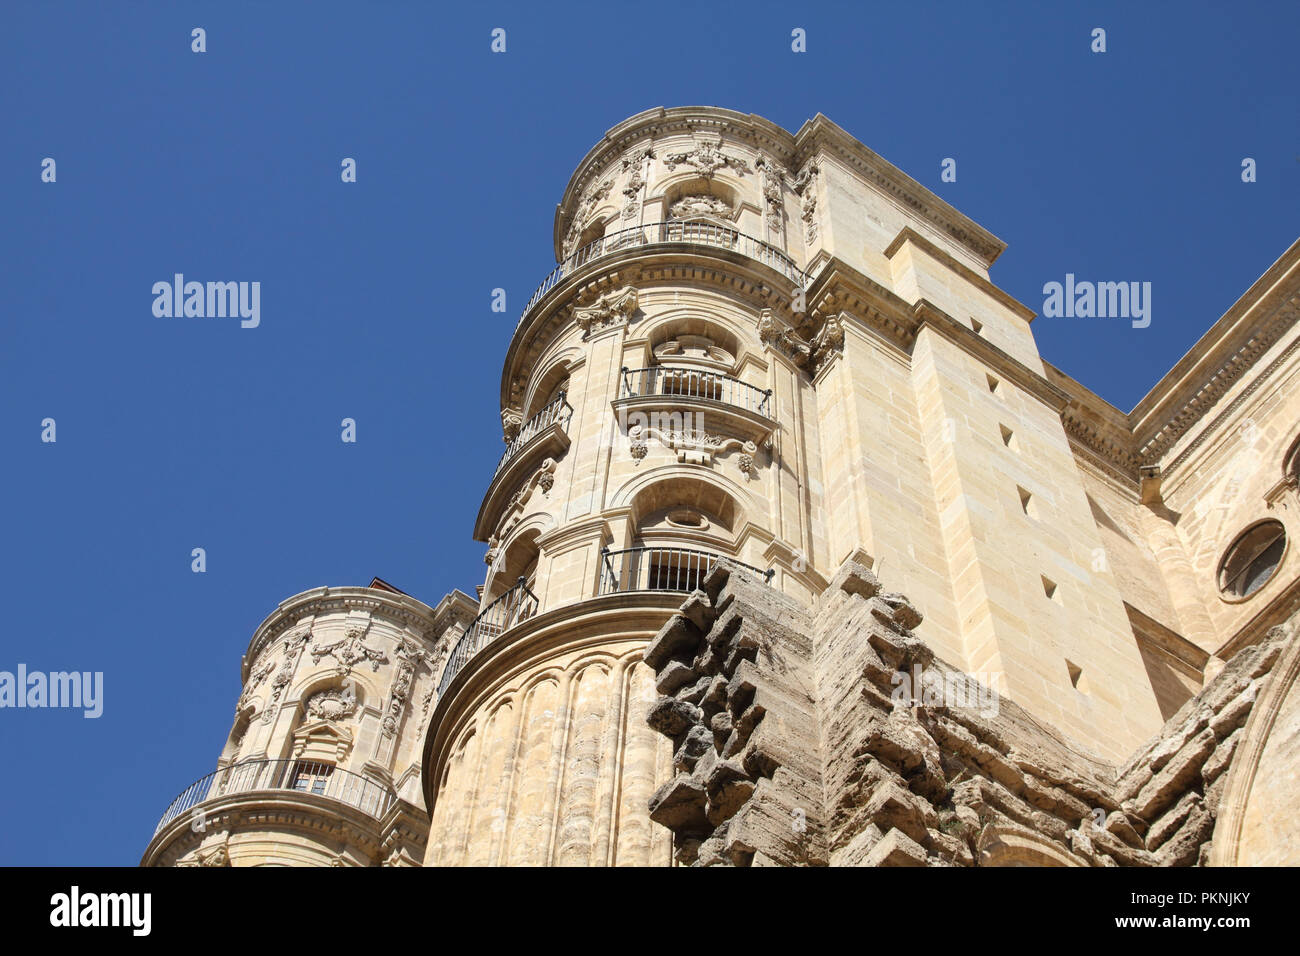 Malaga in Andalusien, Spanien. Kathedrale Kirche - alte religiöse Wahrzeichen. Stockfoto